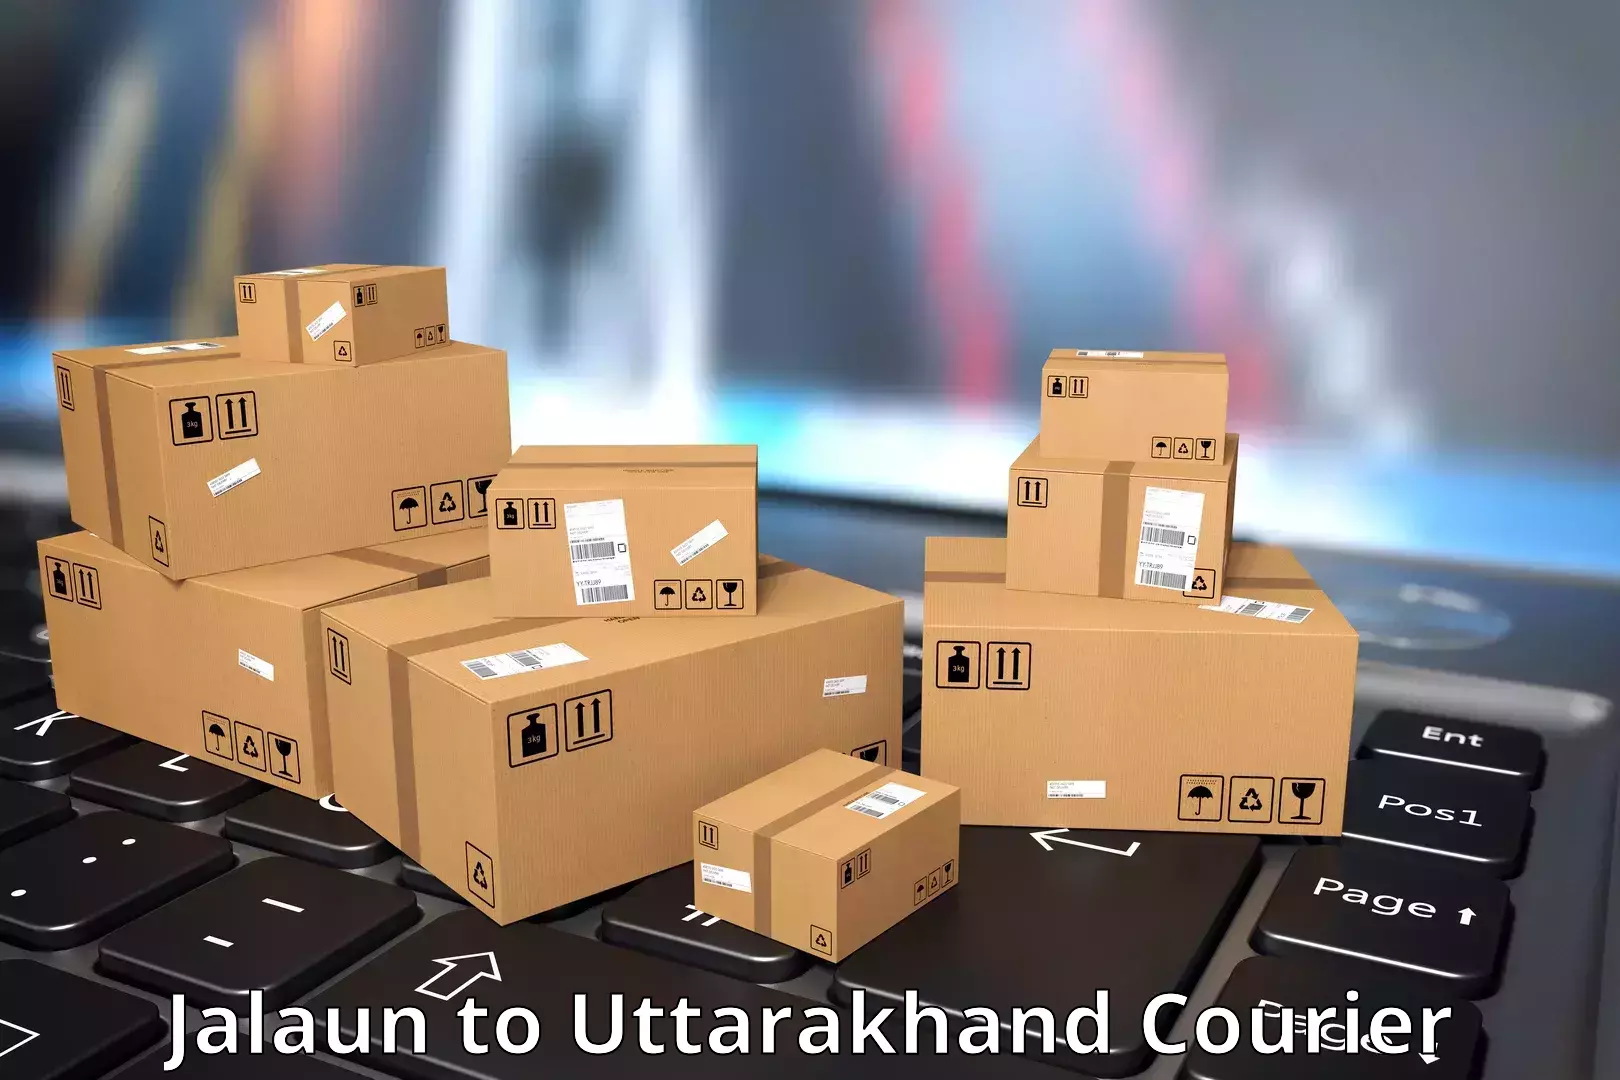 Efficient freight service Jalaun to Dwarahat